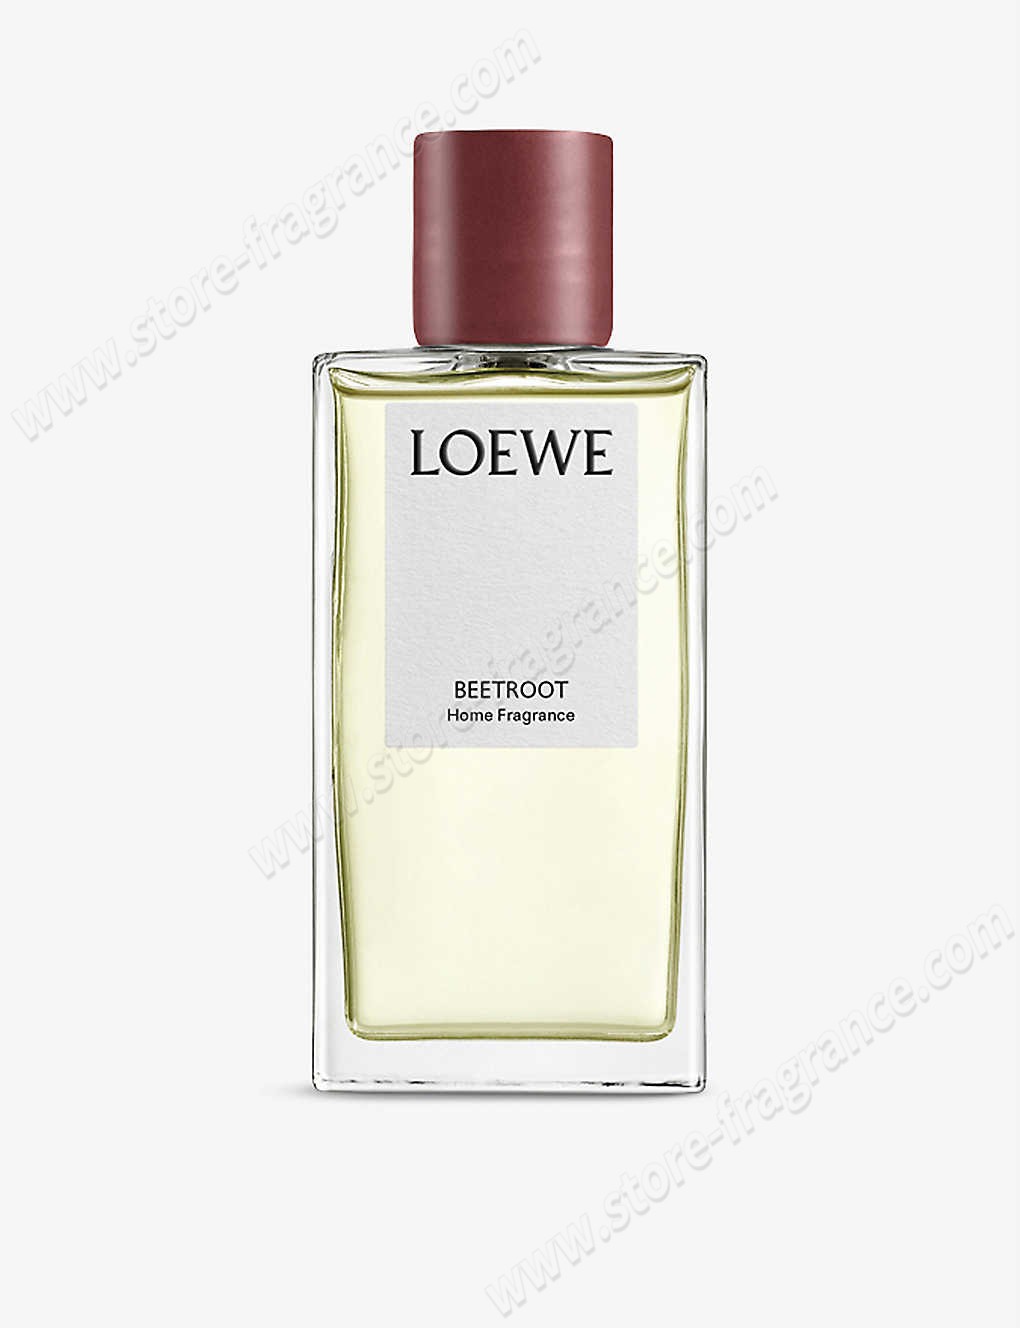 LOEWE/Beetroot home fragrance 150ml ✿ Discount Store - -0